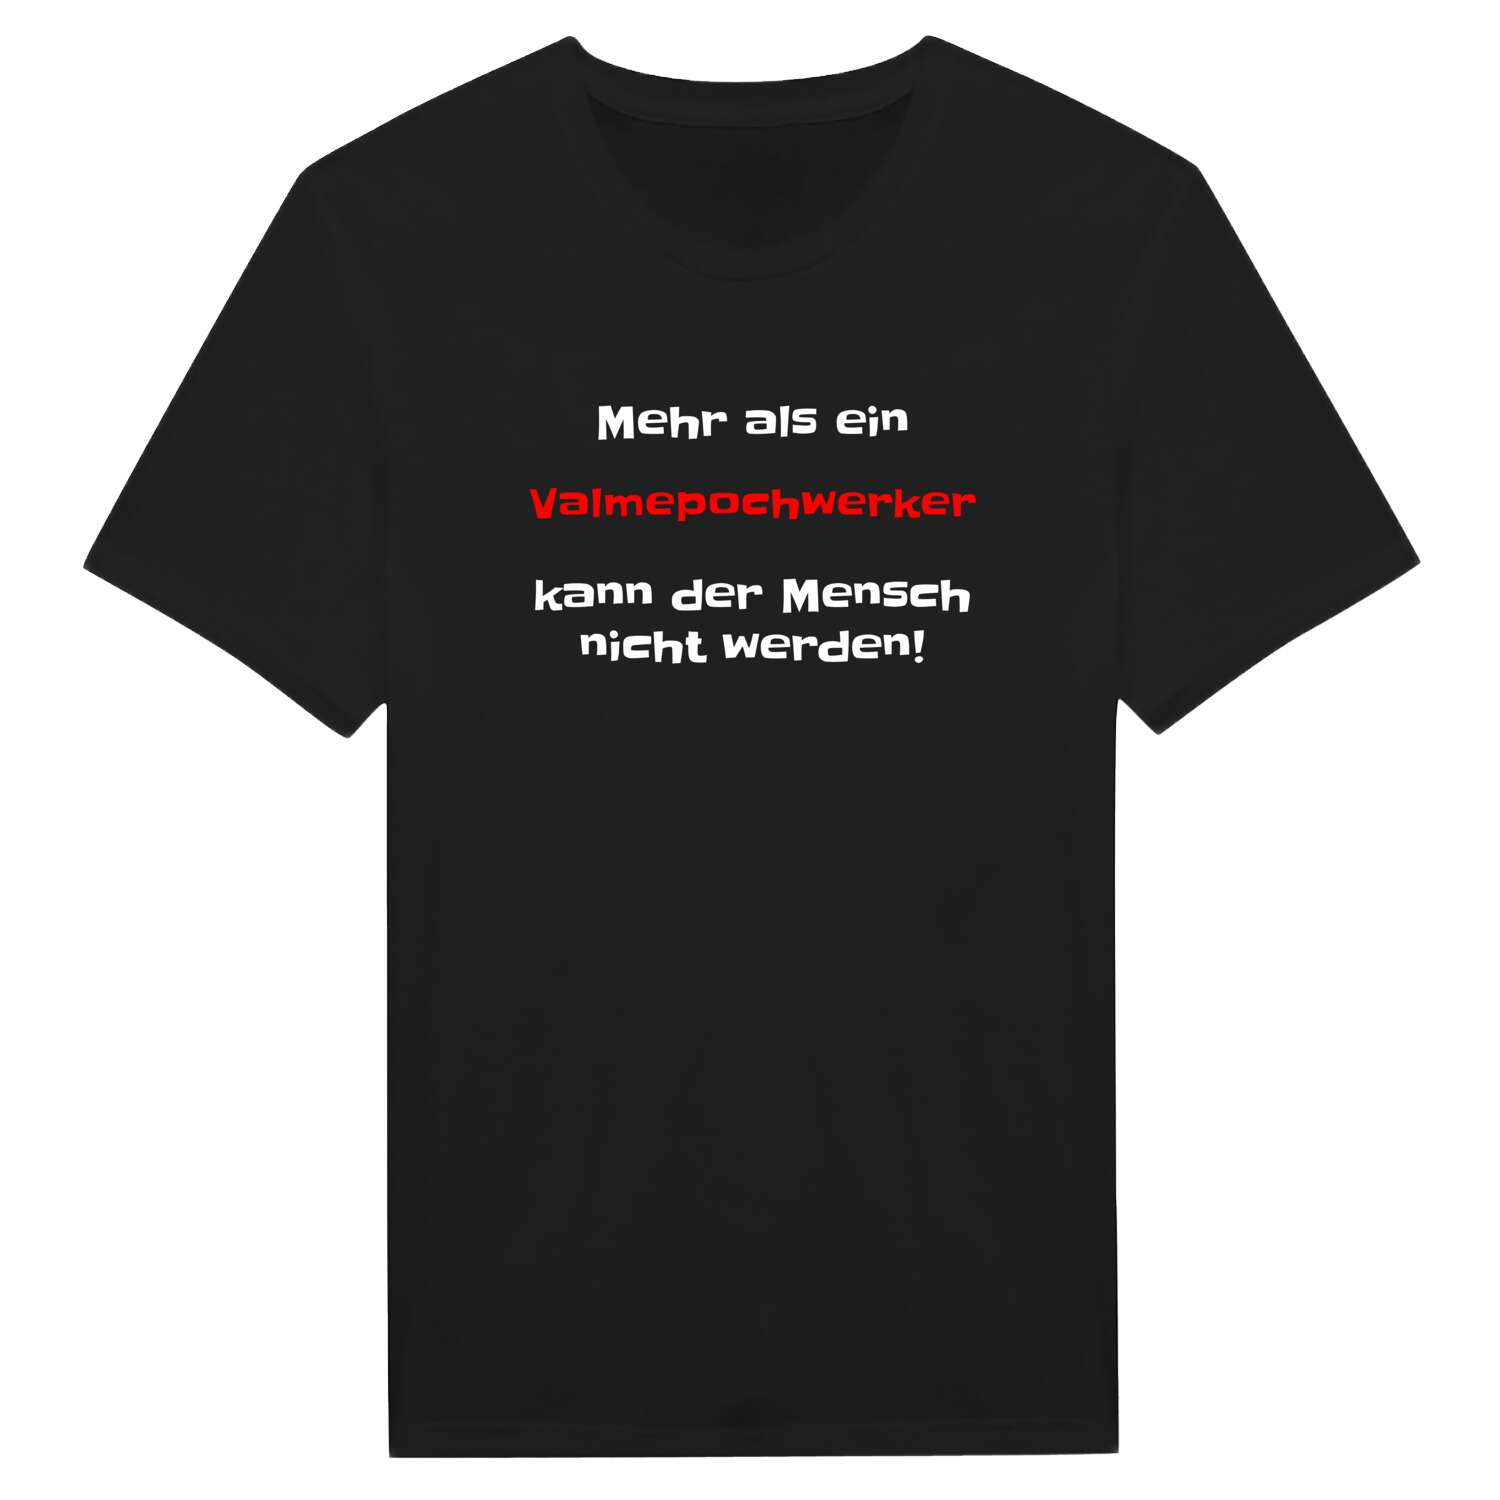 Valmepochwerk T-Shirt »Mehr als ein«